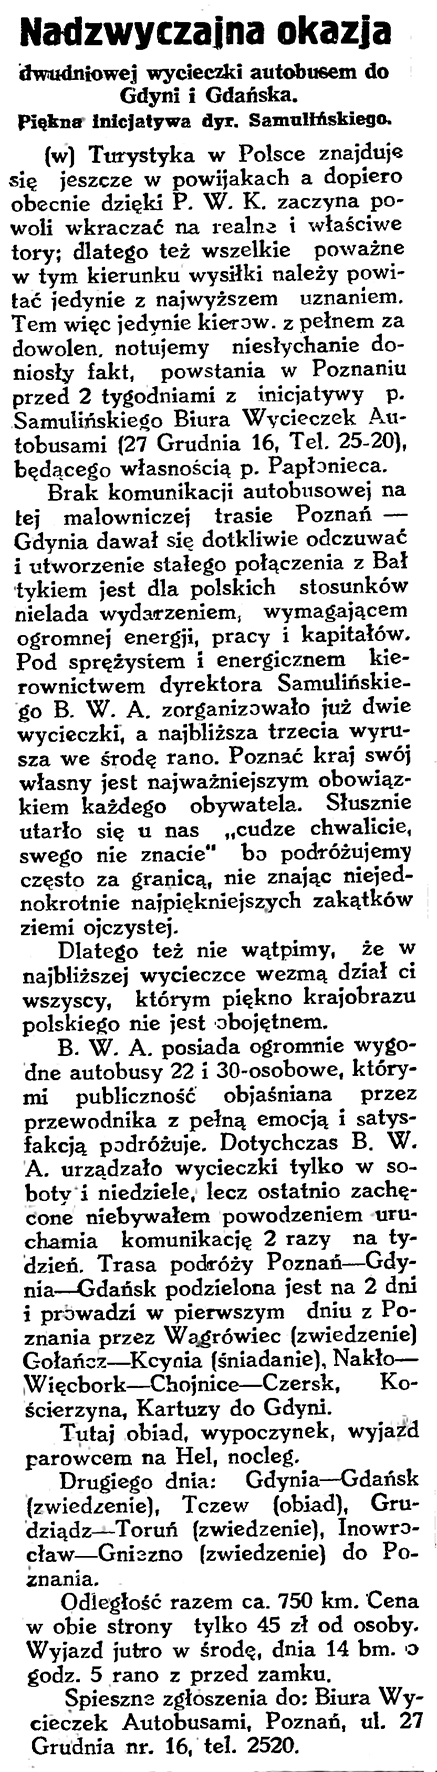 Nadzwyczajna okazja dwudniowej wycieczki autobusem do Gdyni i Gdańska. Piękna inicjatywa dyr. Samulińskiego / (w) // Gazeta Gdańska. - 1929, nr 159, s. 6